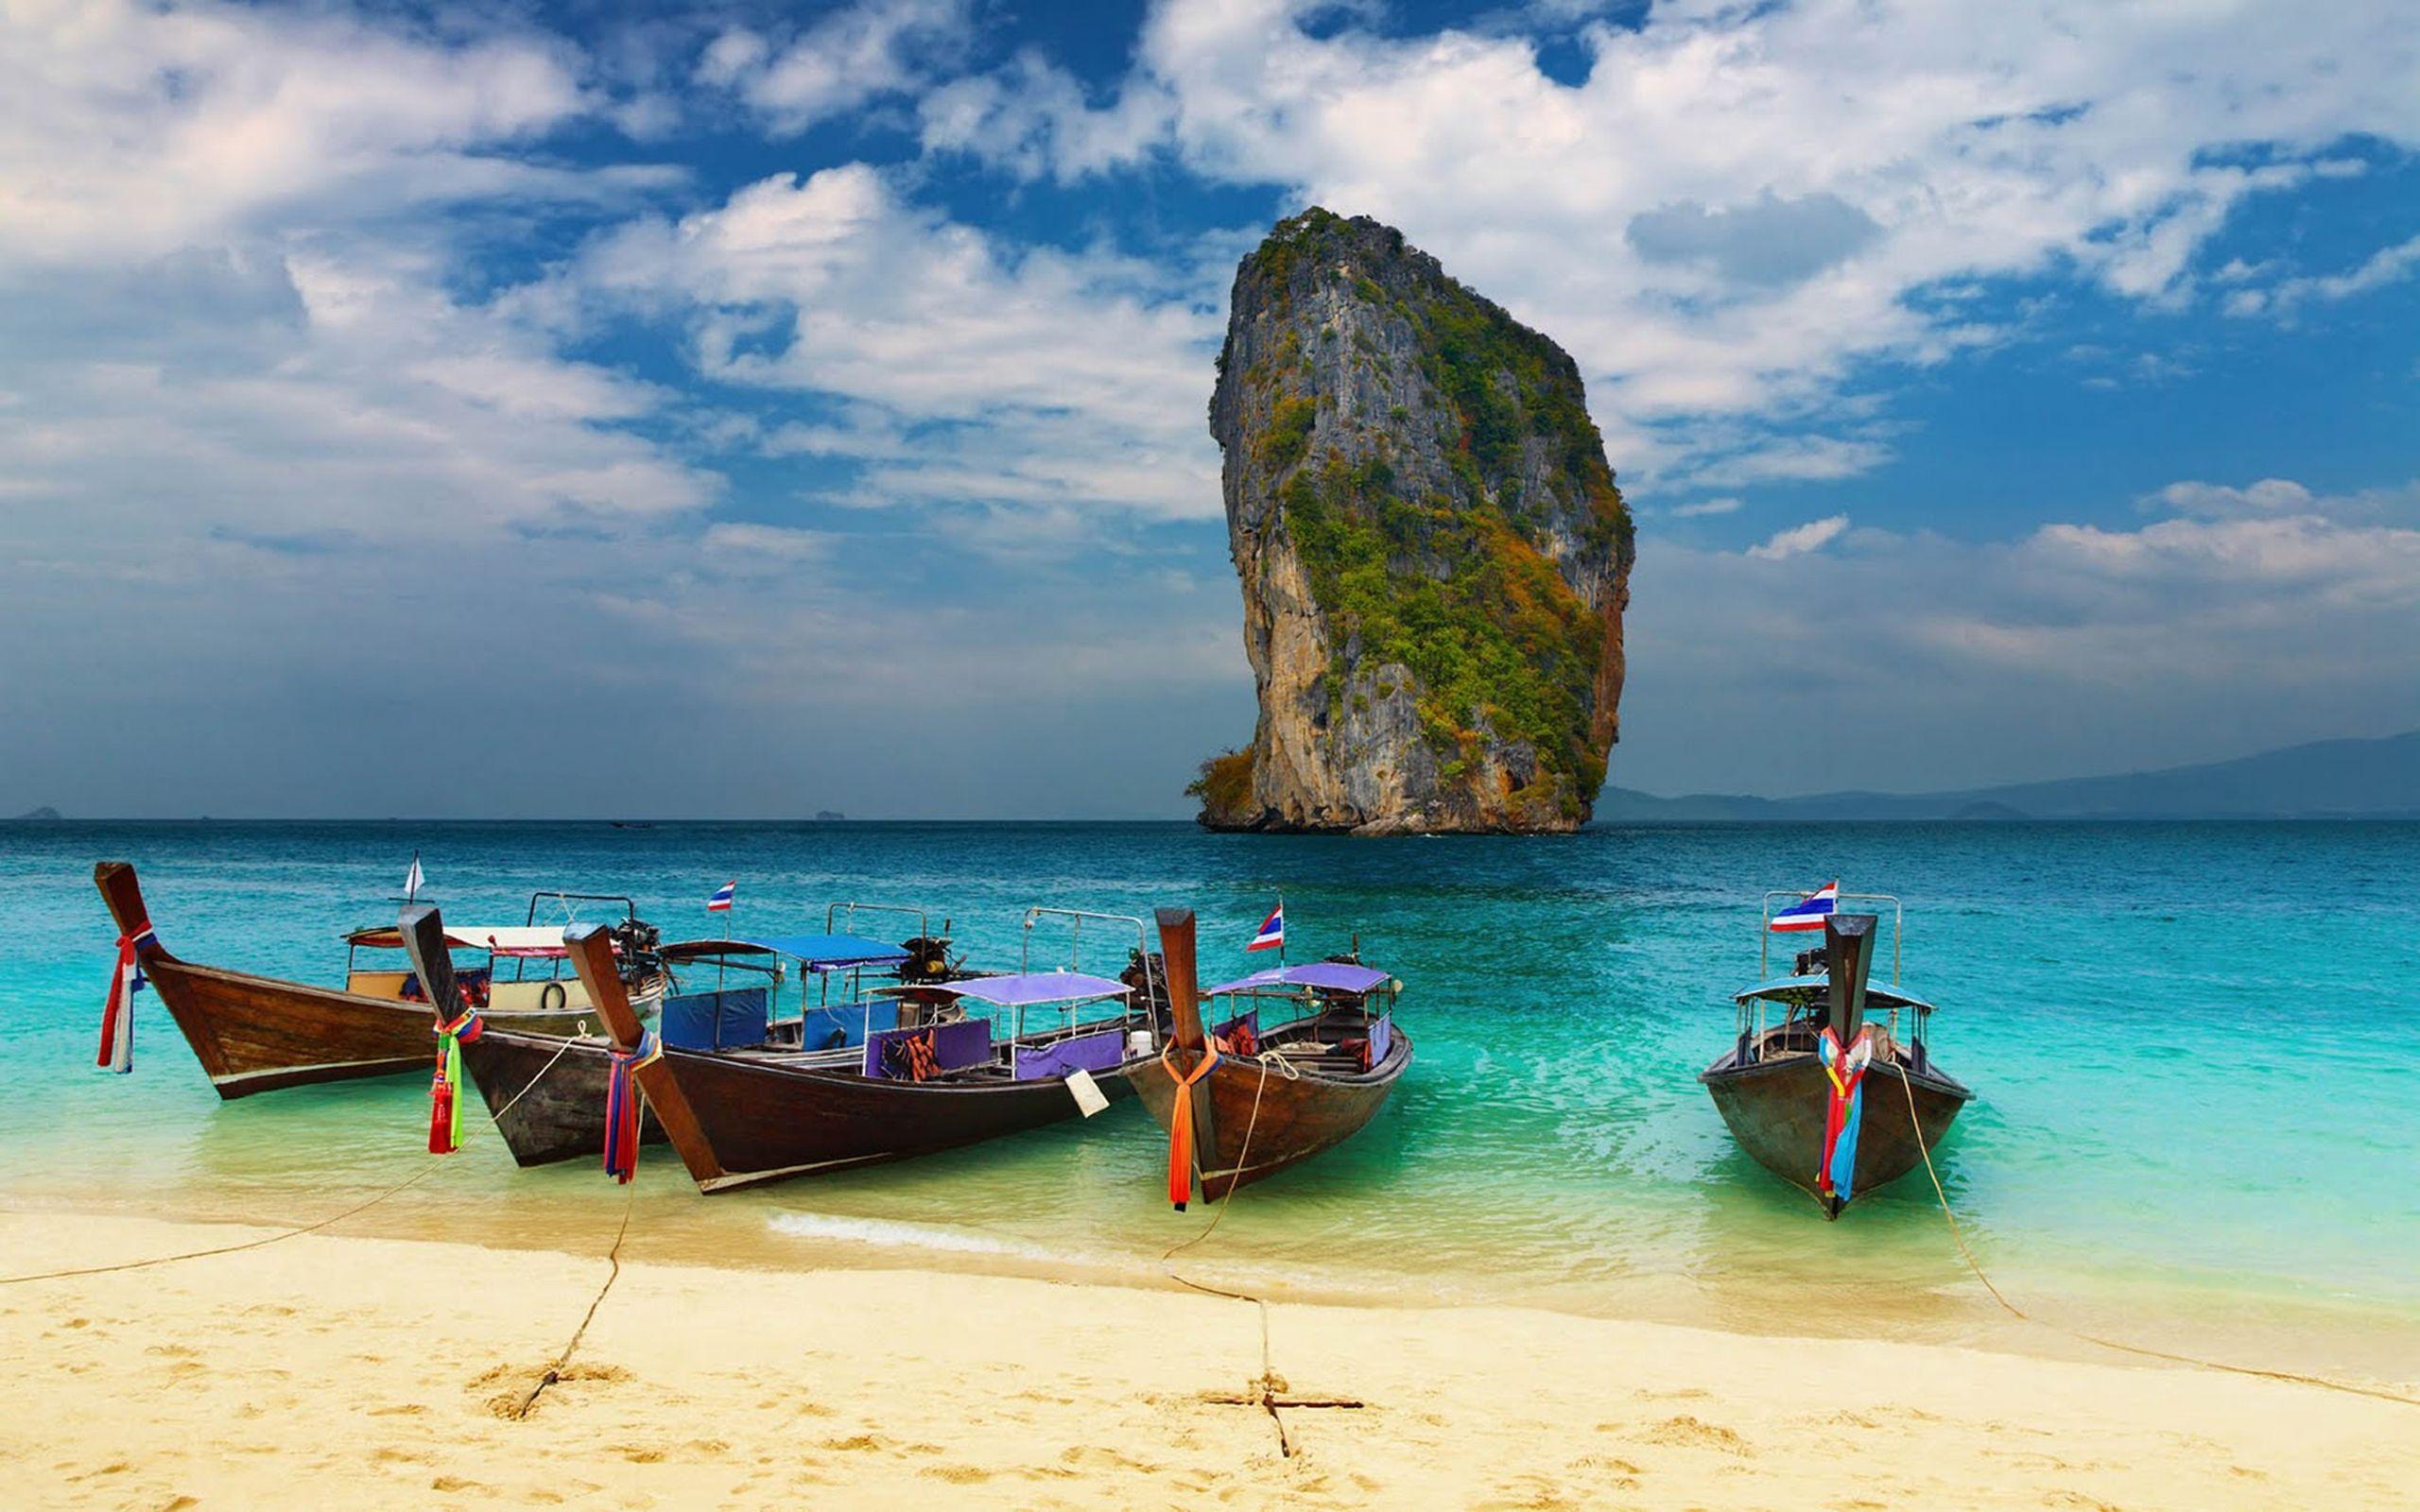 Travel pleasure. Краби остров в Тайланде. Остров Краби Пхукет. Таиланд, Пхукет, Андаманское море. Мьянма Андаманское море.